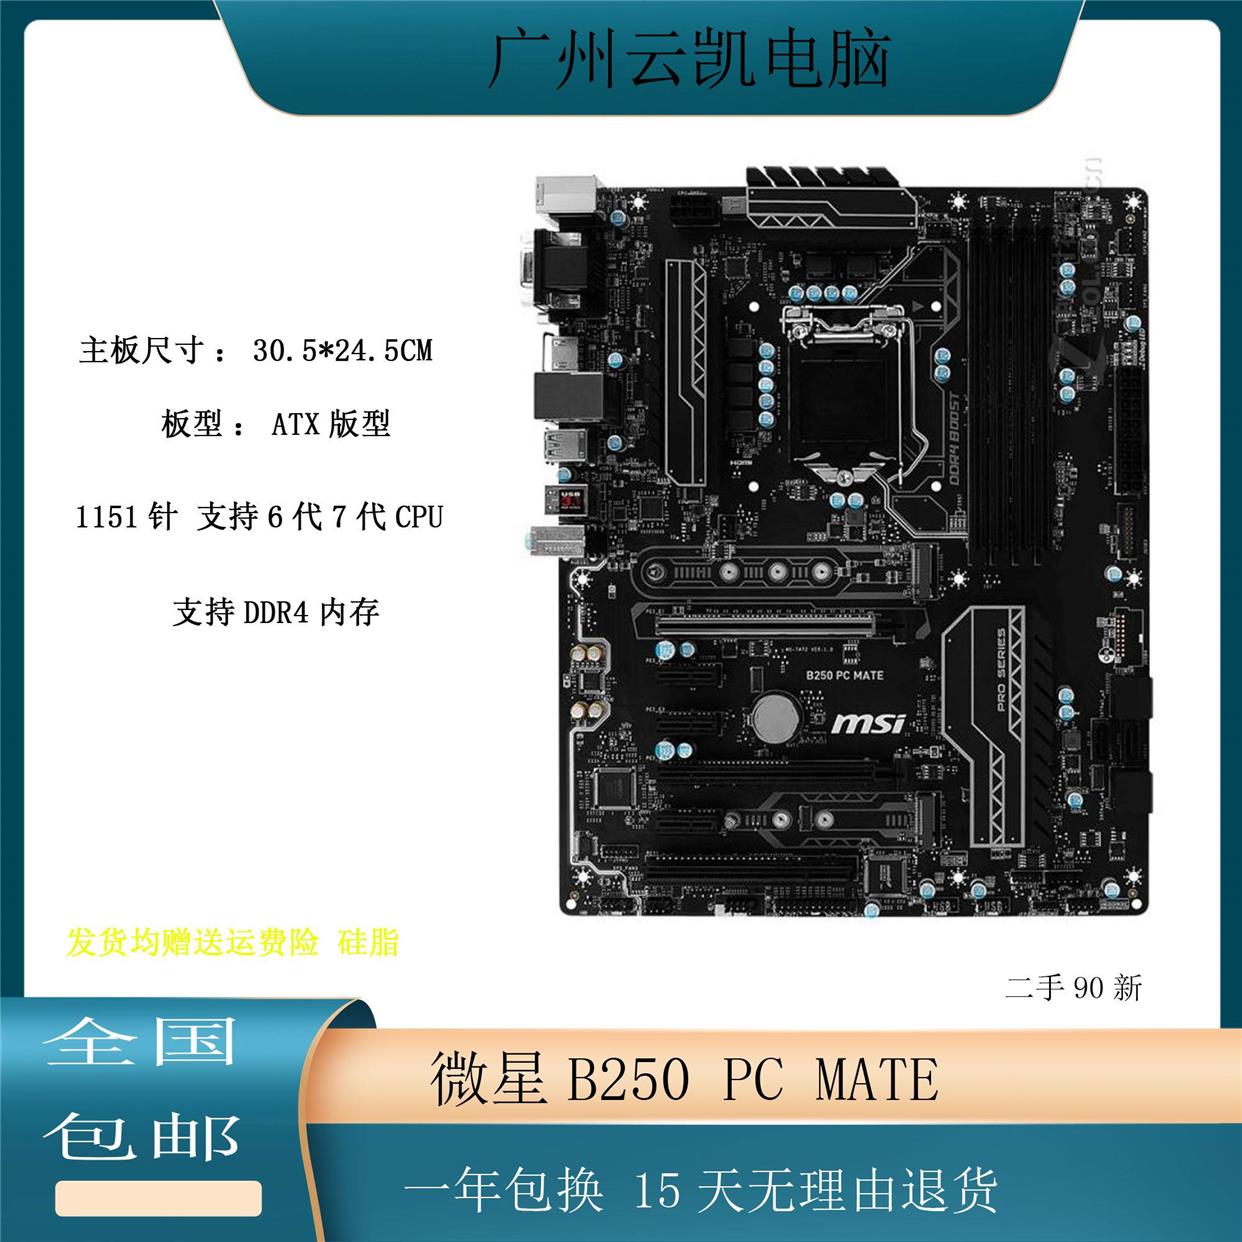 微星B250 PC MATE 主板 1151针 DDR4内存 支持6代7代CPU